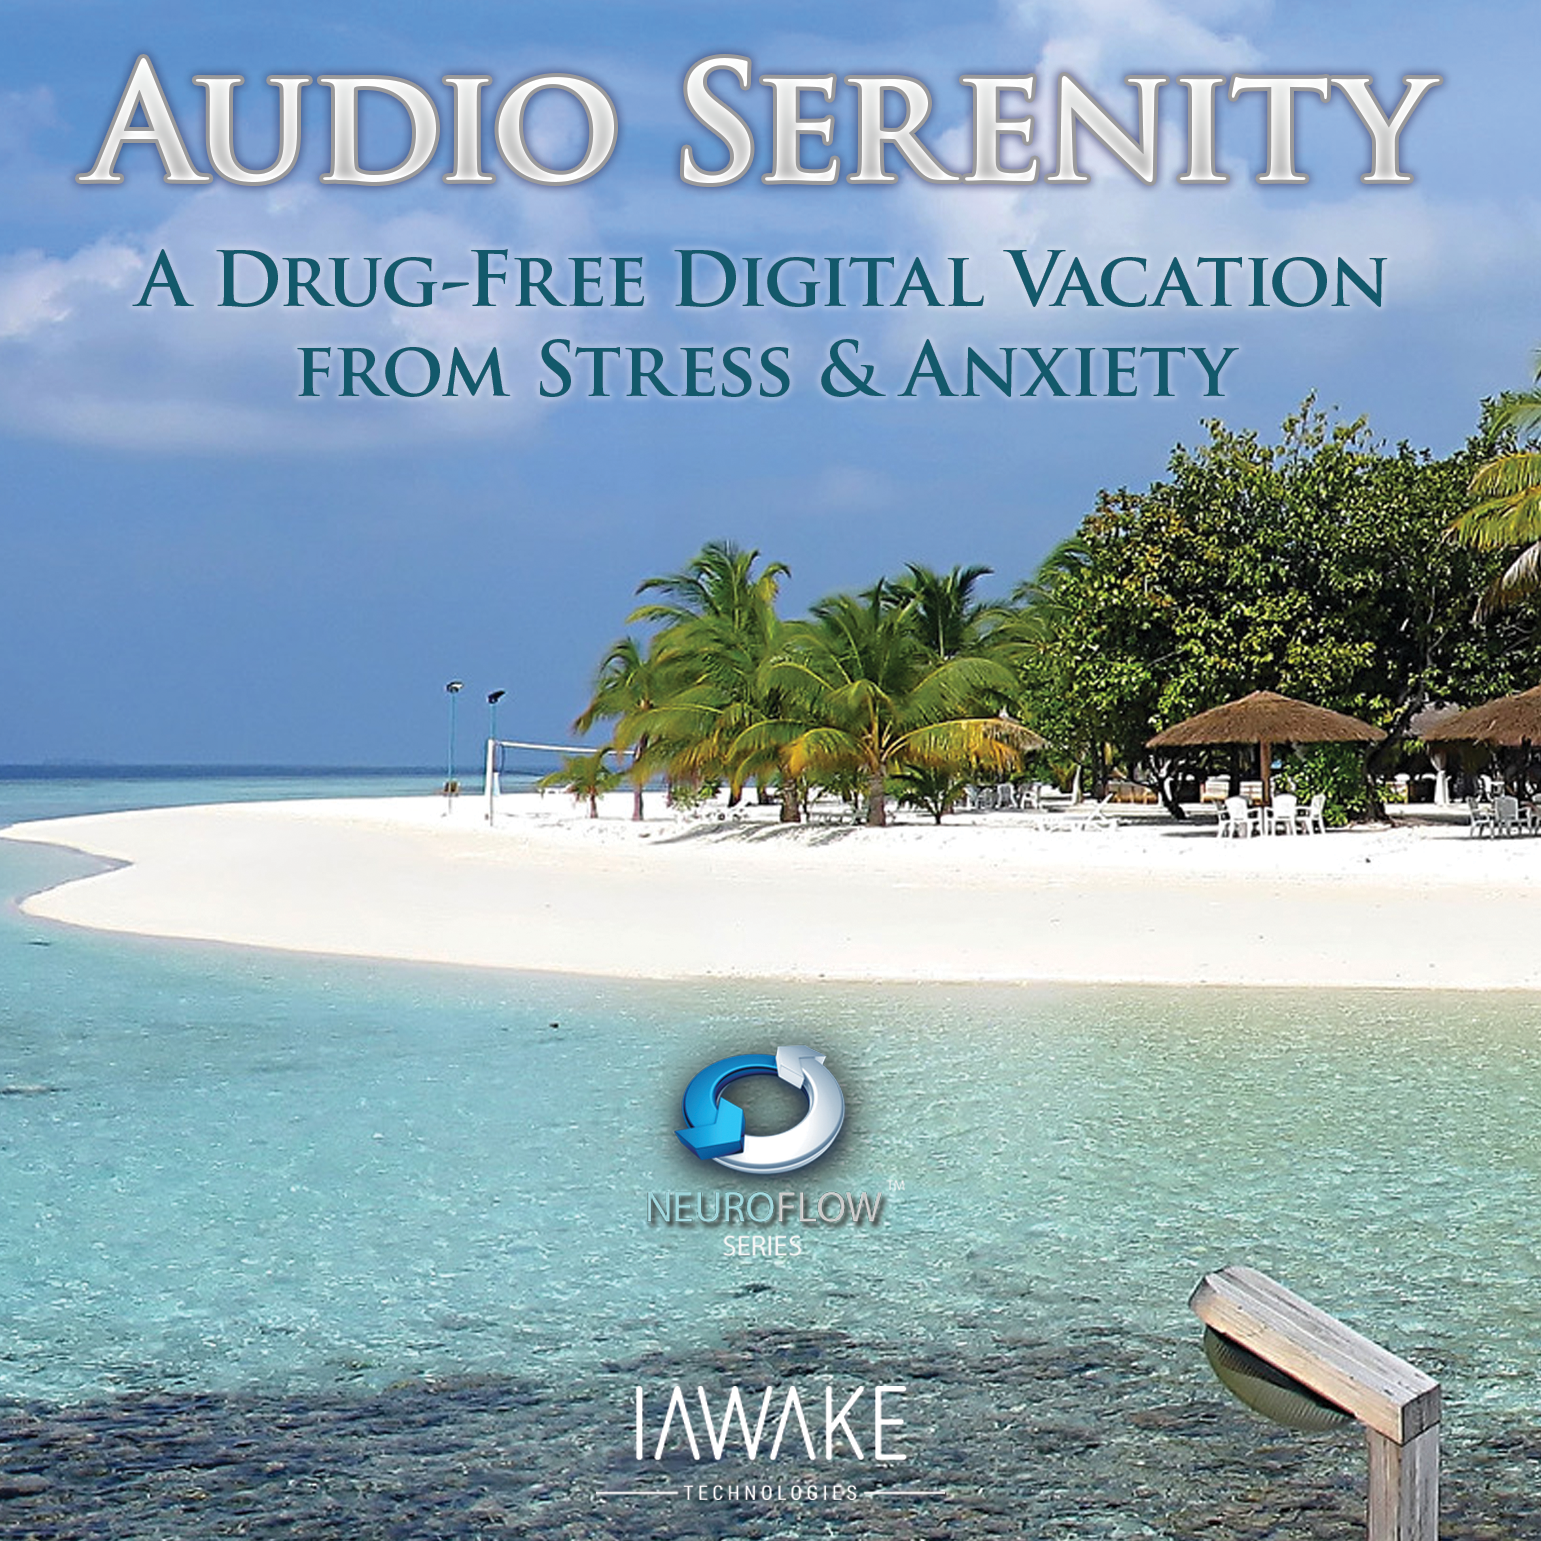 Audio Serenity